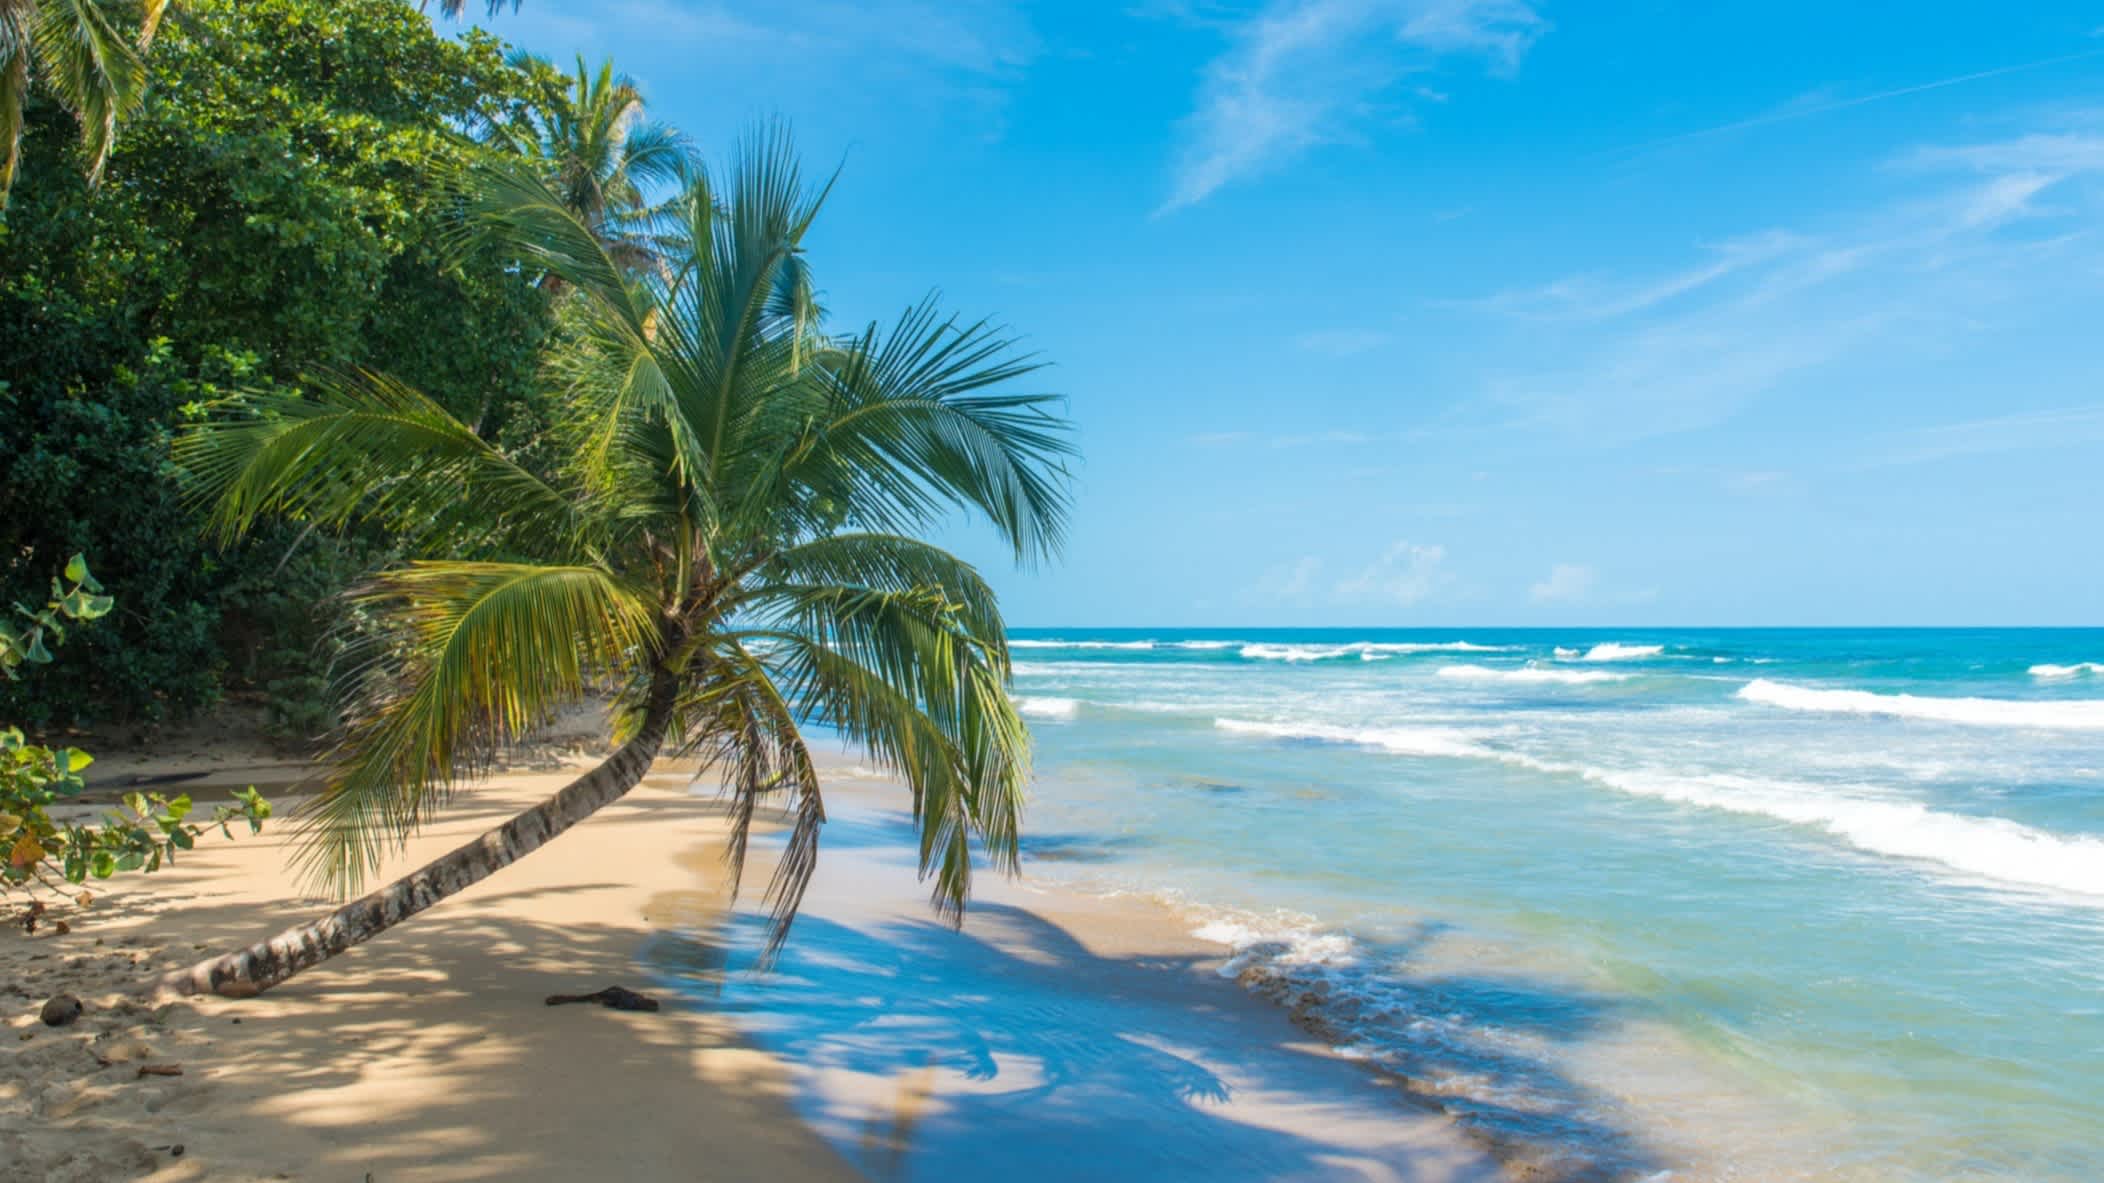 La plage de Playa Chiquita située à proximité de Puerto Viejo, Costa Rica